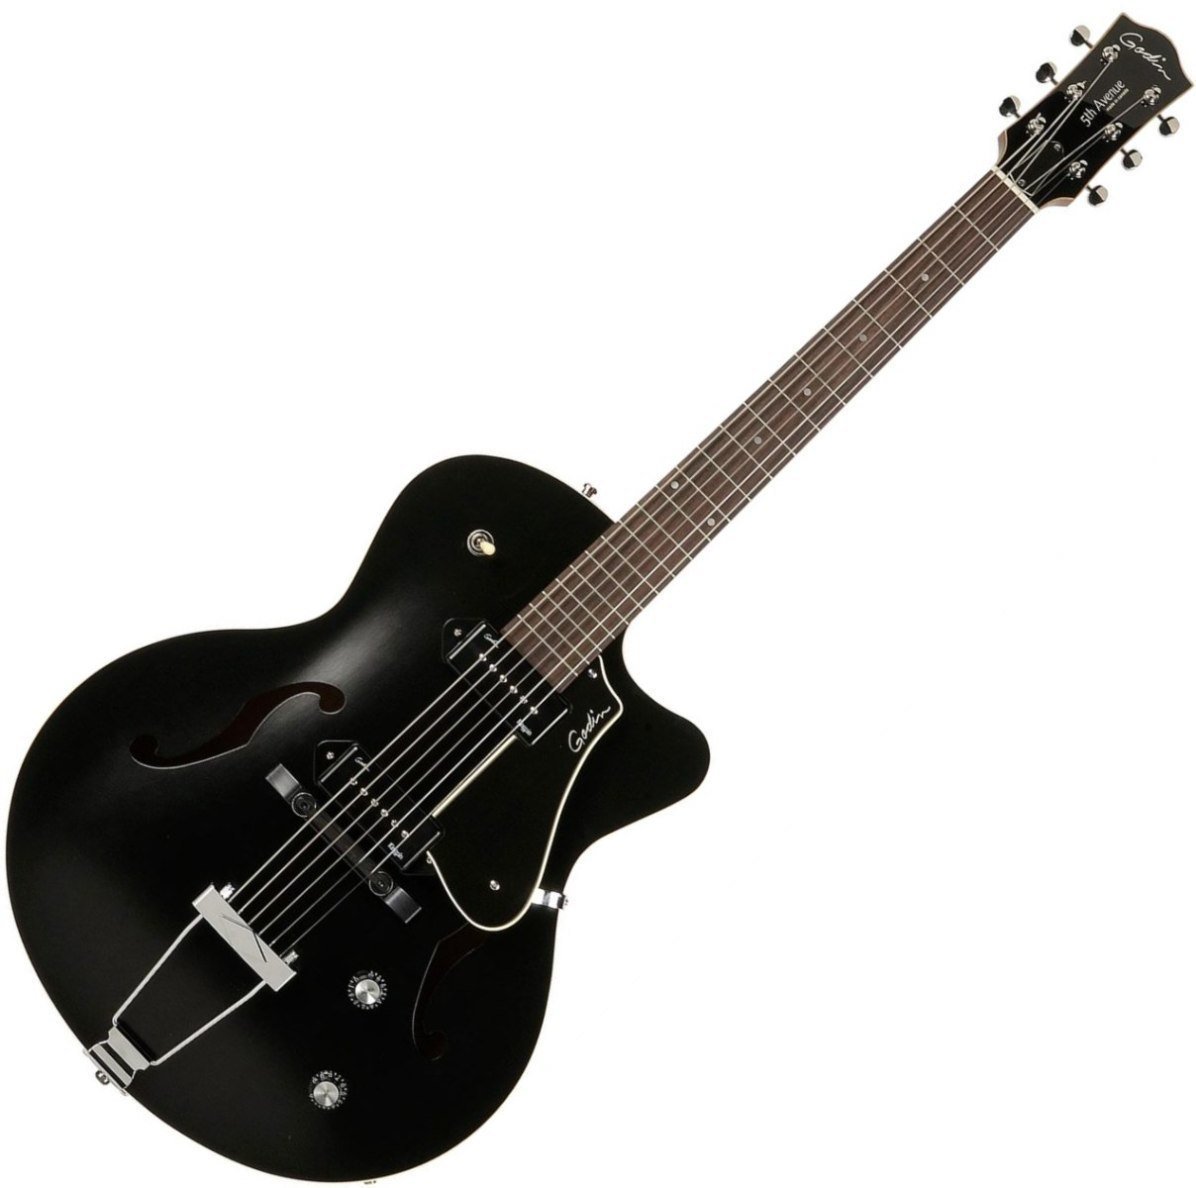 Semiakustická kytara Godin 5-Th Avenue Kingpin II Black